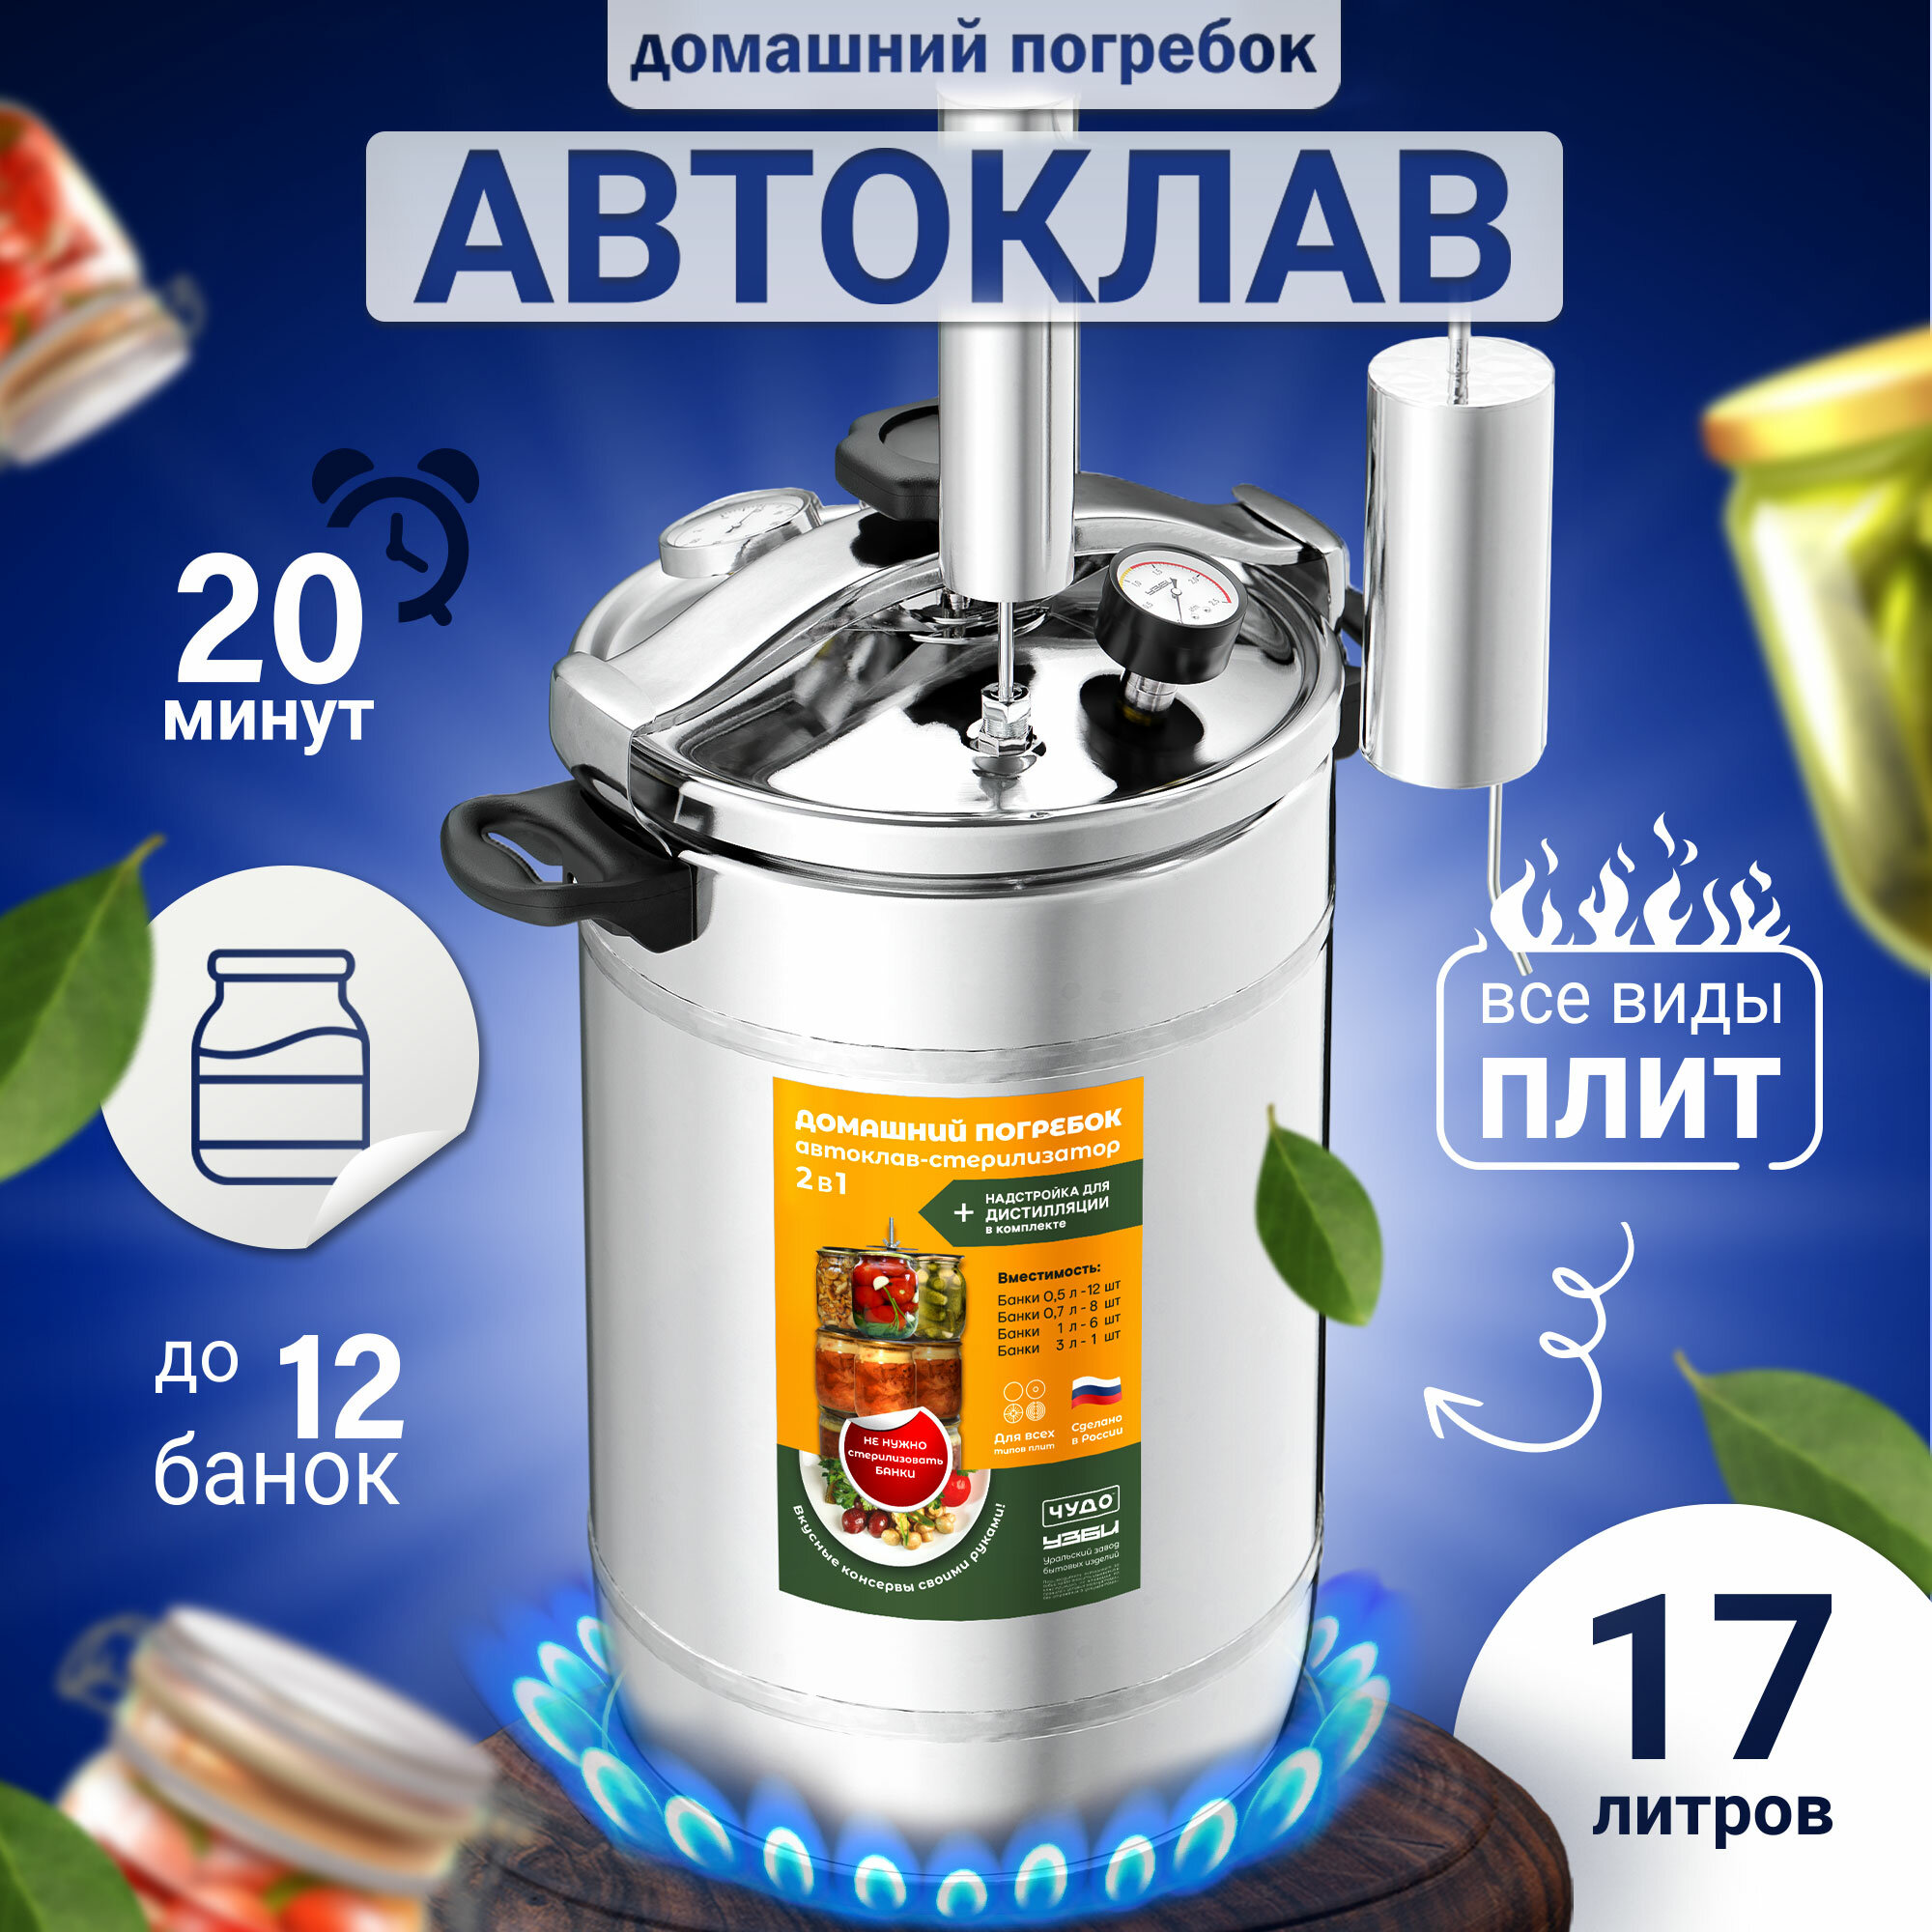 Кухонный паровой стерилизатор Автоклав Домашний погребок 2 в 1 Классик из нержавеющей стали, 17 литров